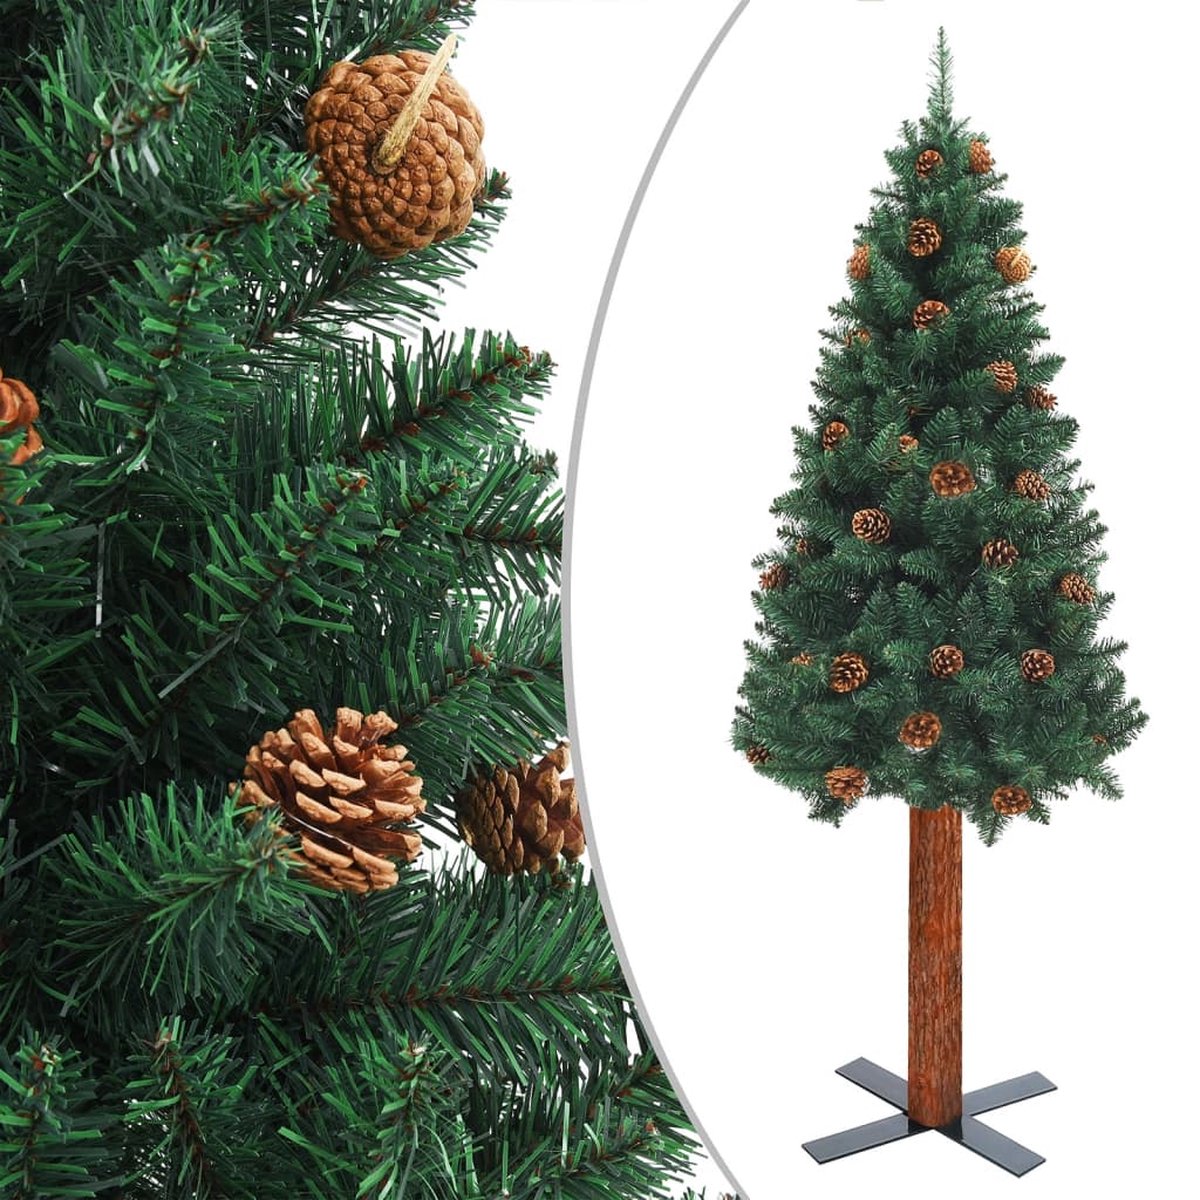 VidaLife Kerstboom met LED's en hout en dennenappels smal 180 cm groen